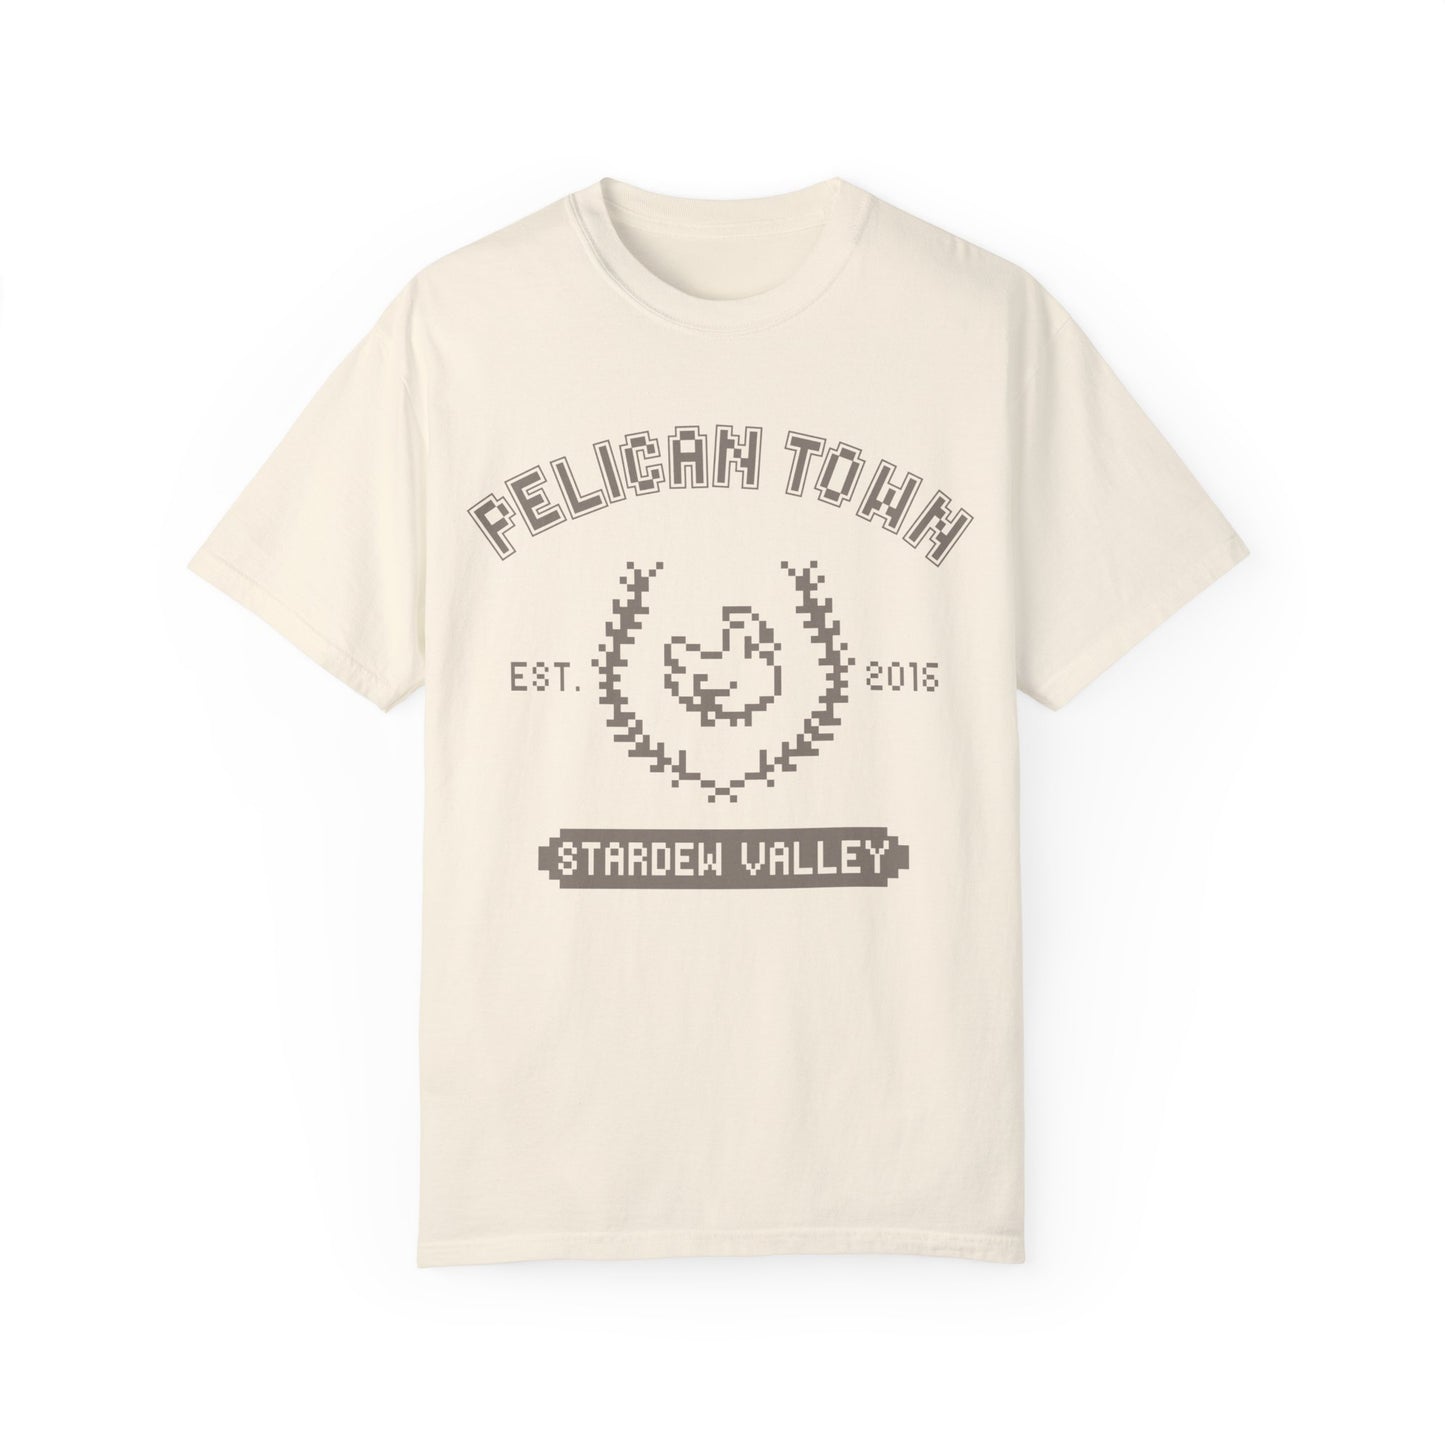 Pelican Town Pixel Cotton Tee